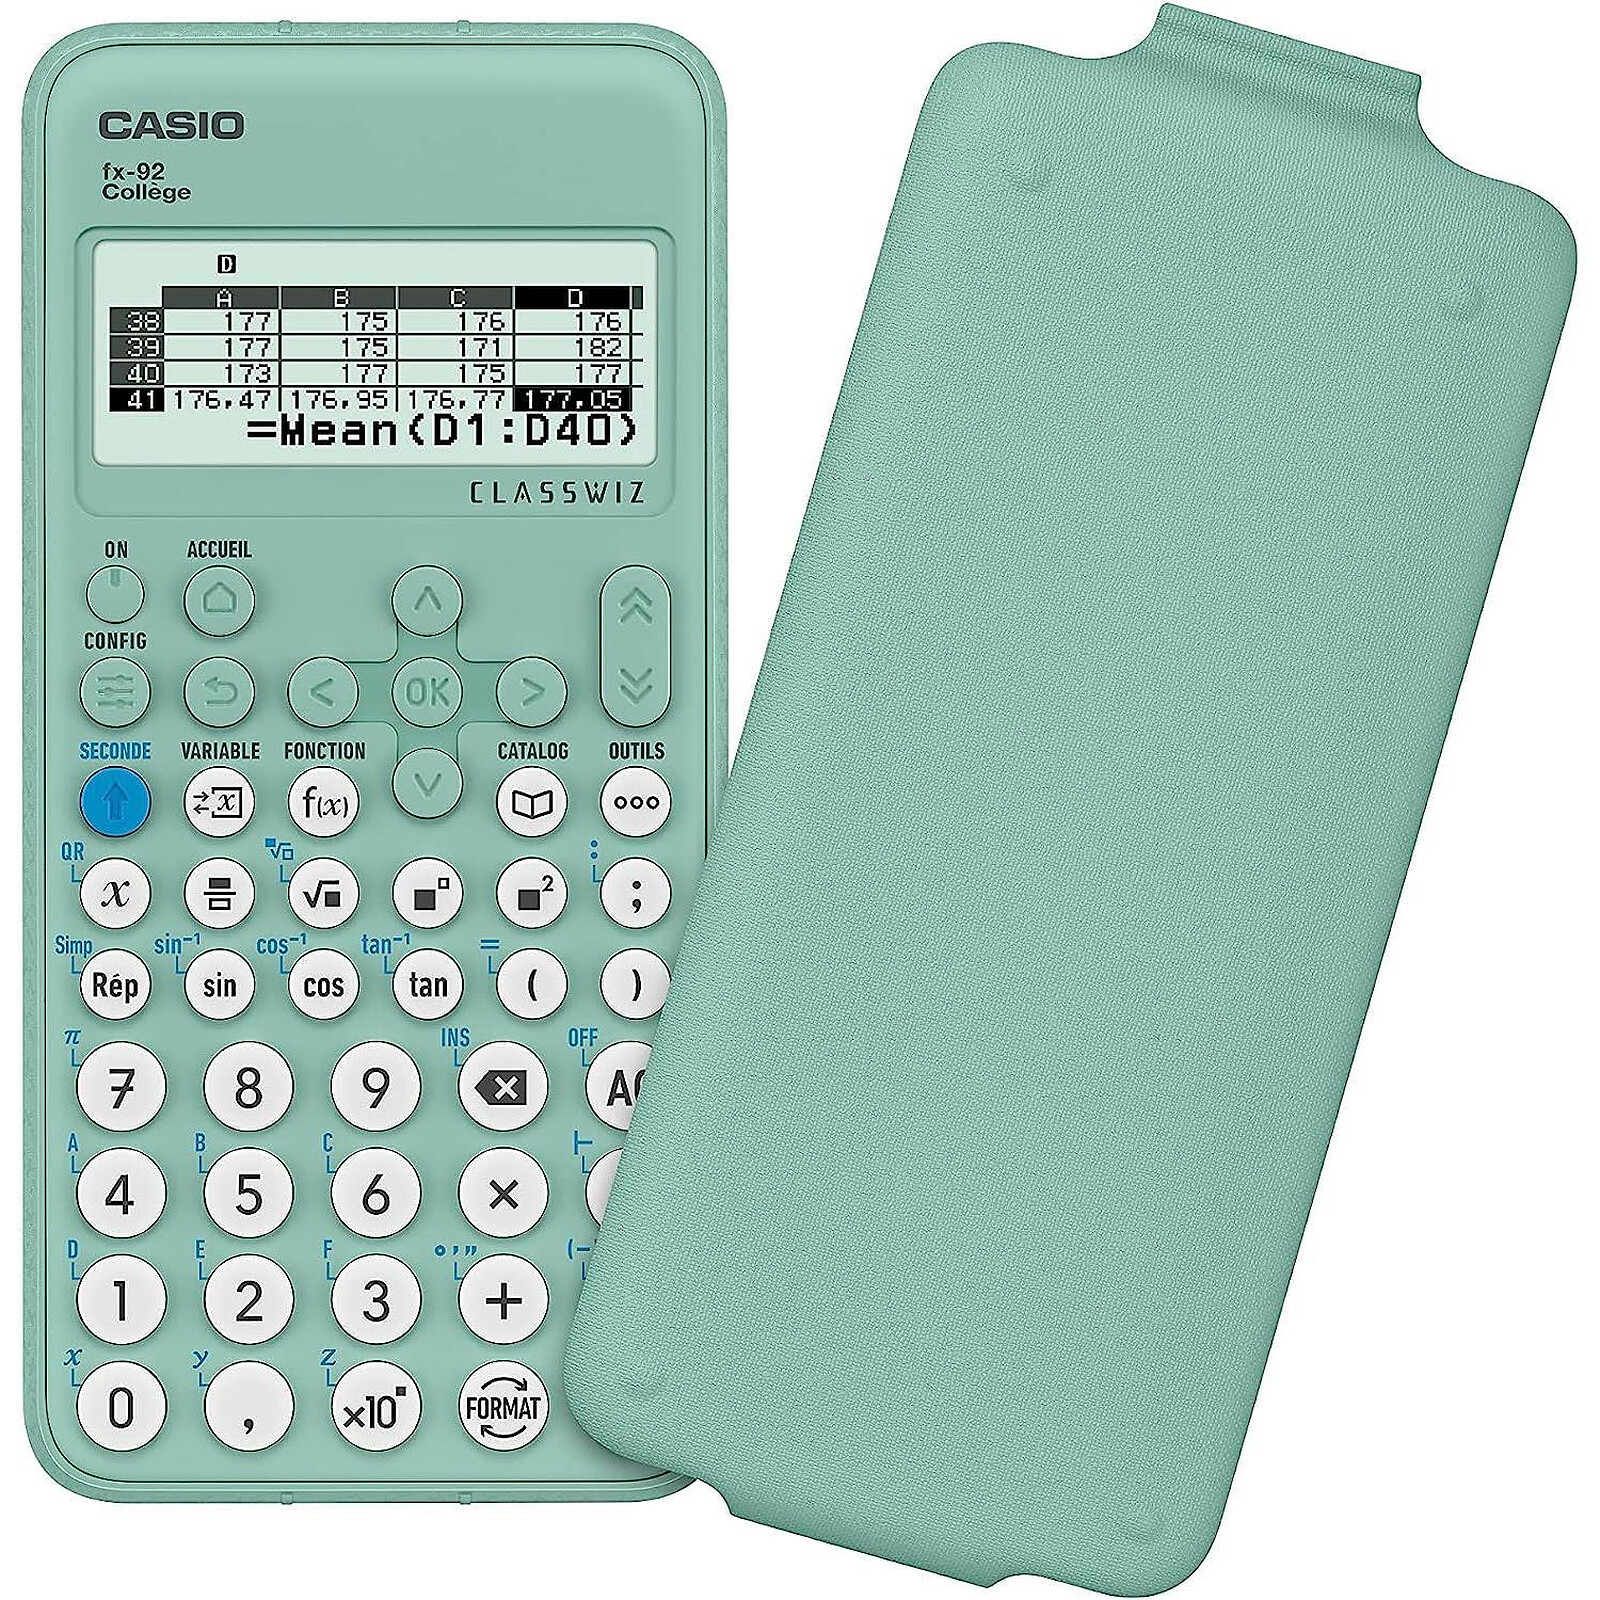 Calculatrice programmable - Achat / Vente Calculatrice